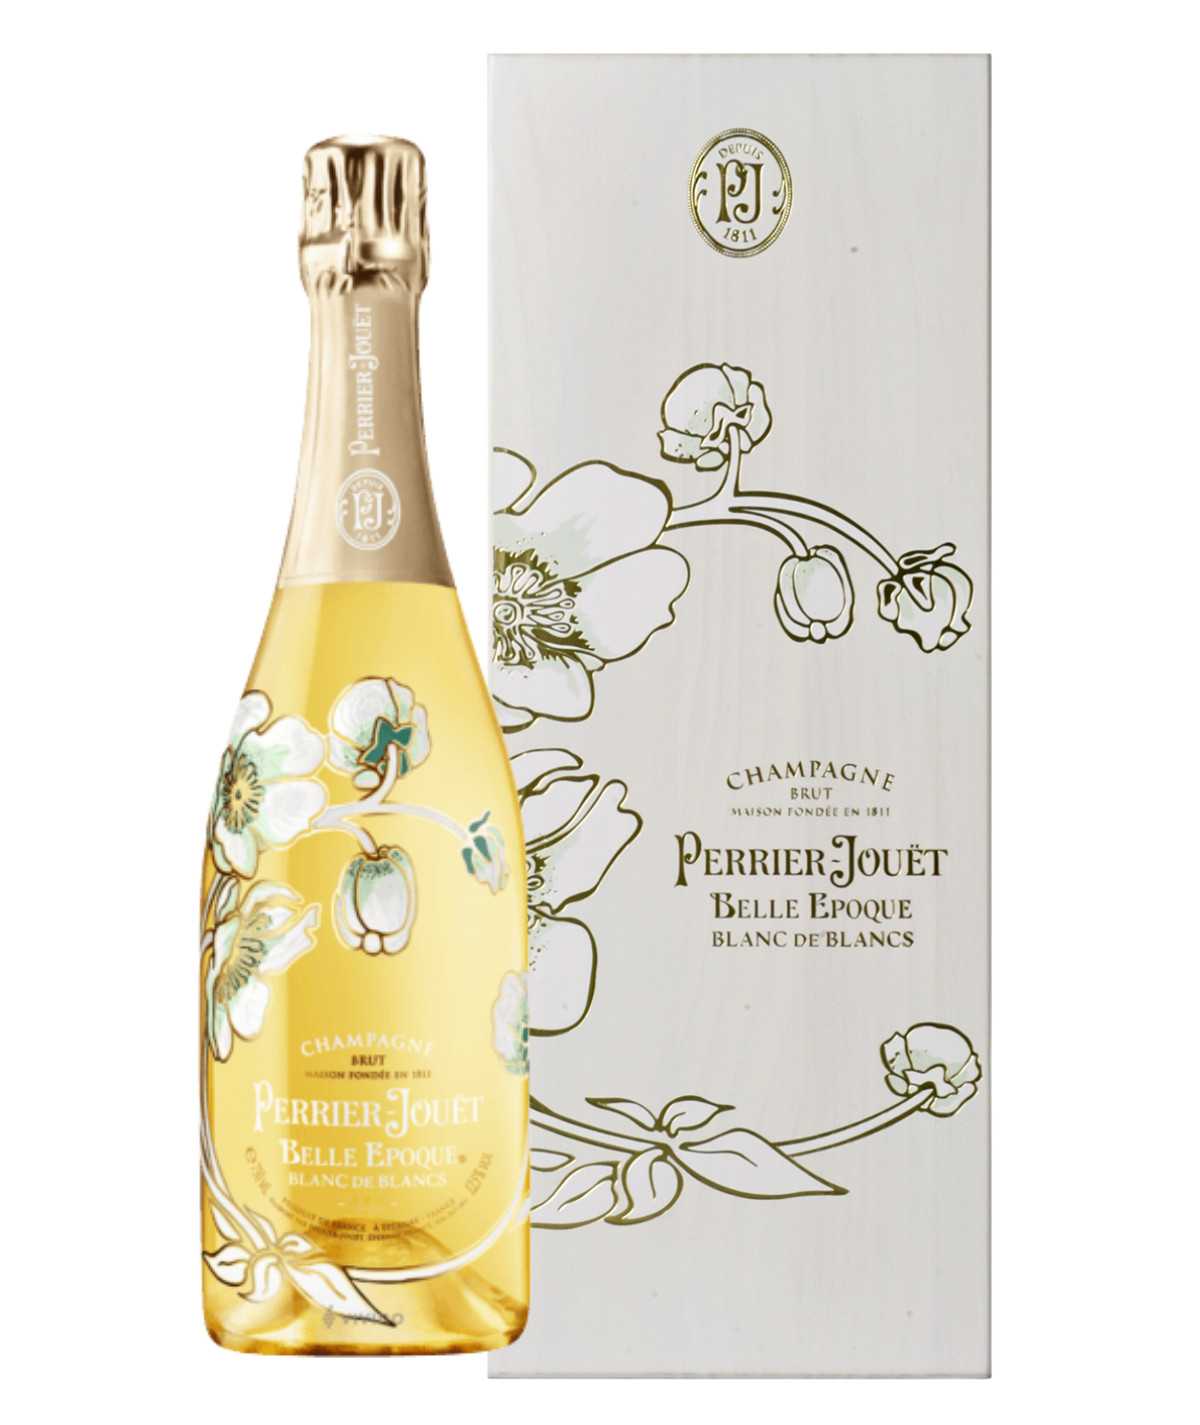 Champagne PERRIER-JOUËT Belle Epoque Blanc de Blancs Millésime 2006